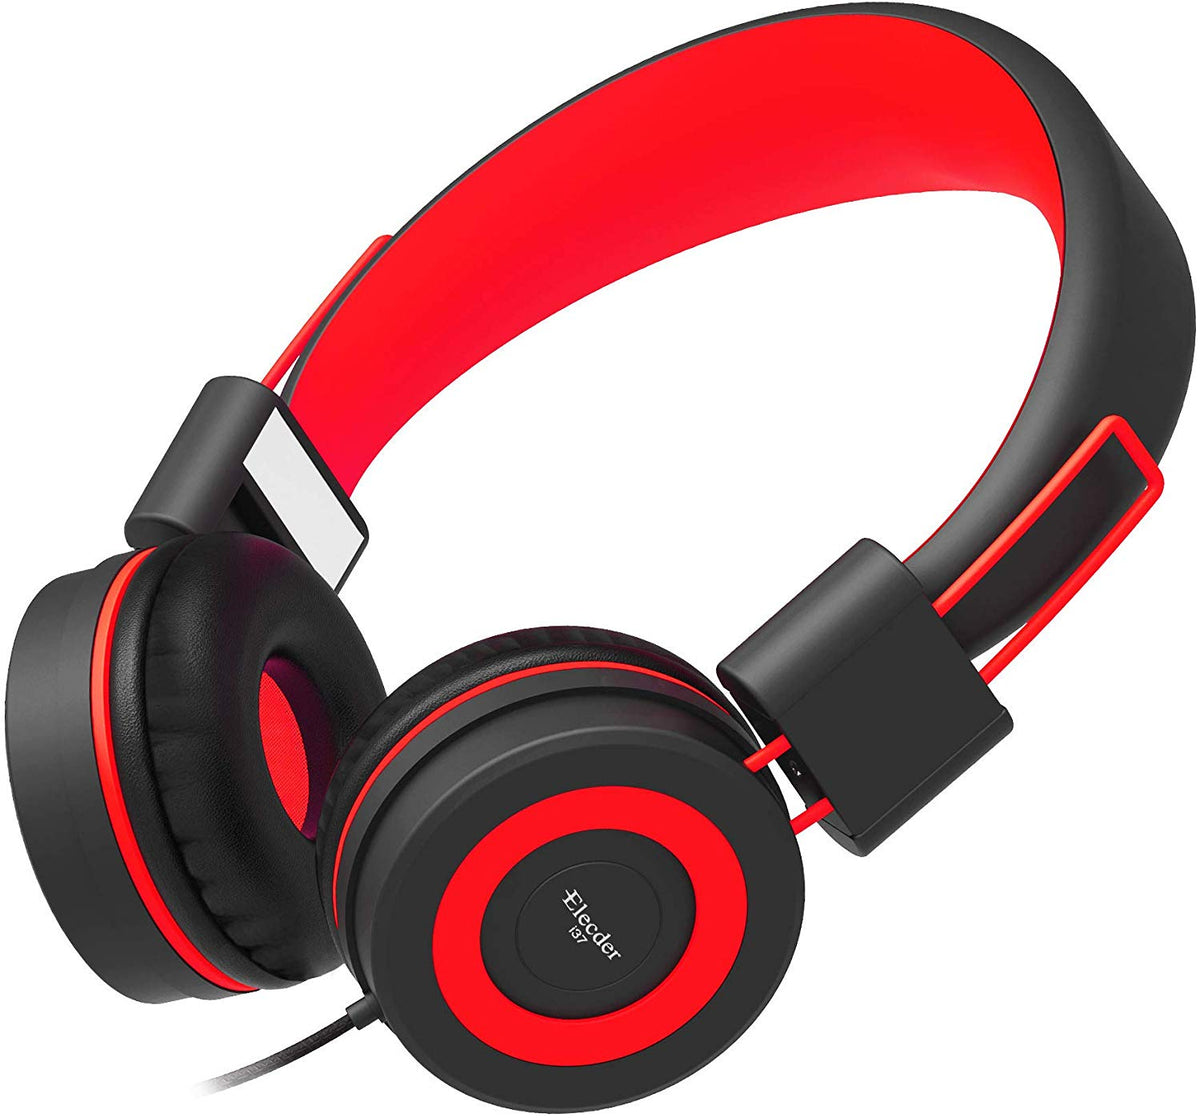 Elecder i37 Kids Headphones for Children Girls Boys Teens Foldable